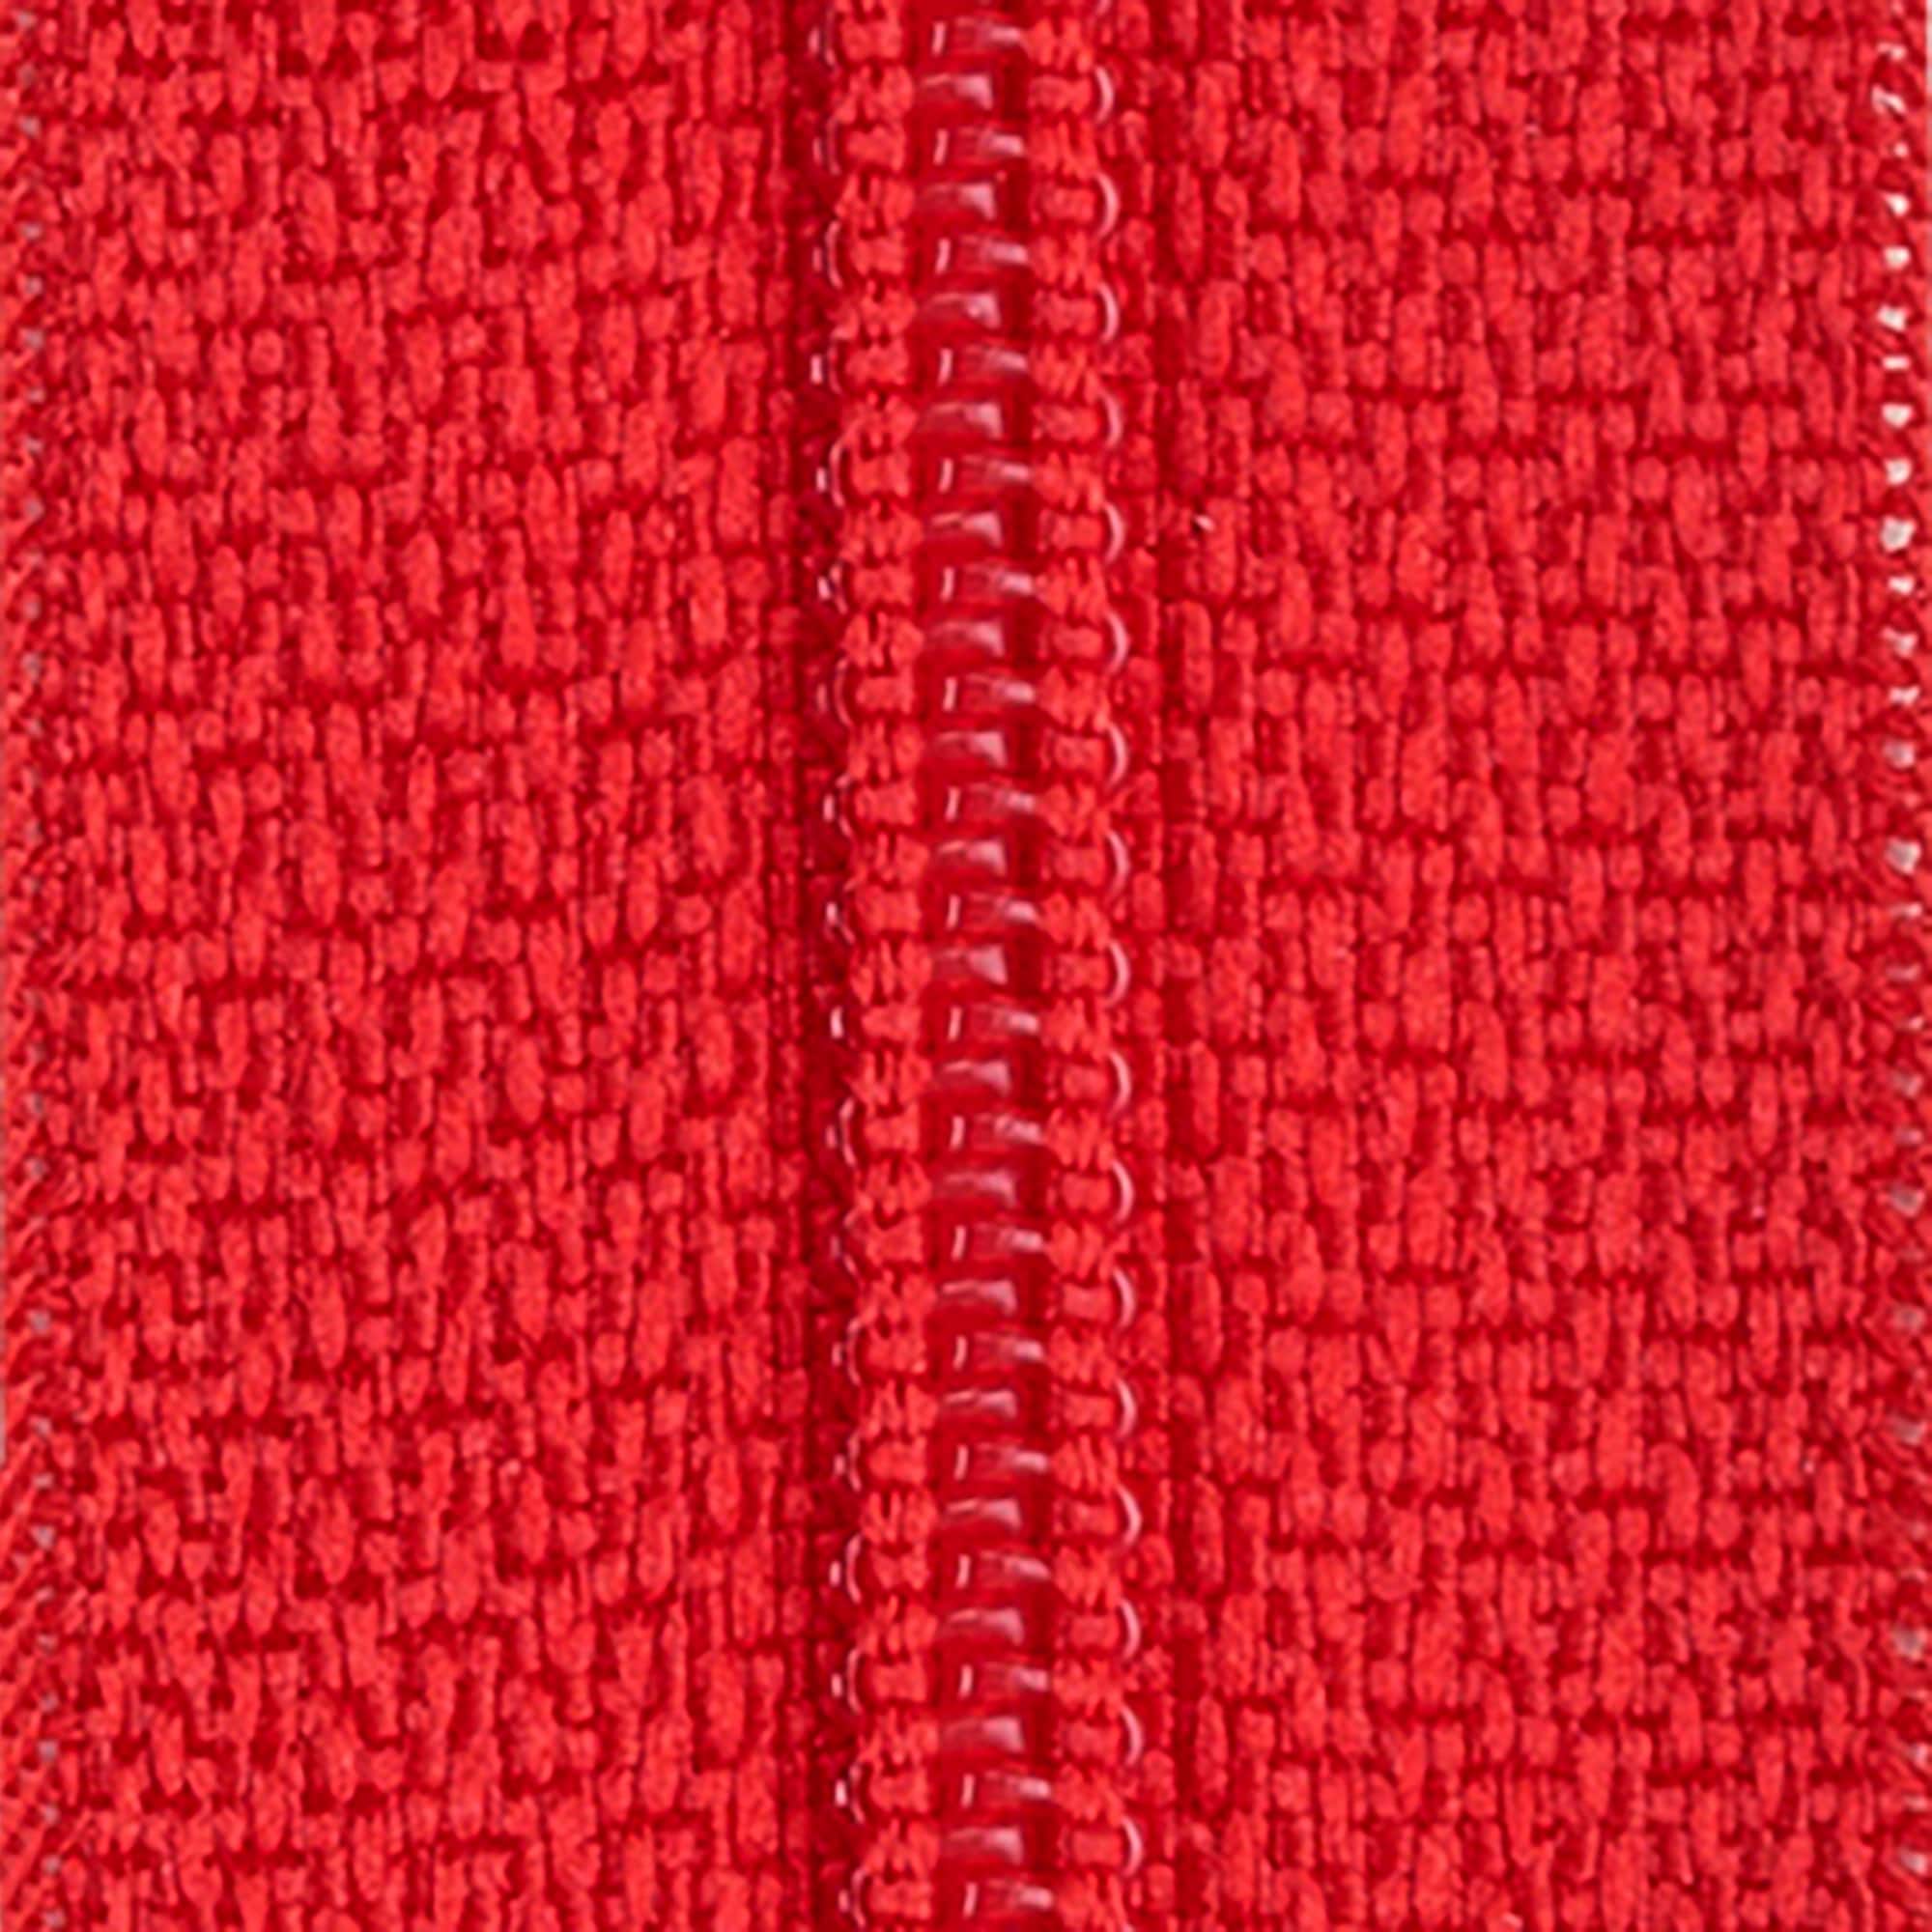 Coats &#x26; Clark&#x2122; All-Purpose Polyester Zipper